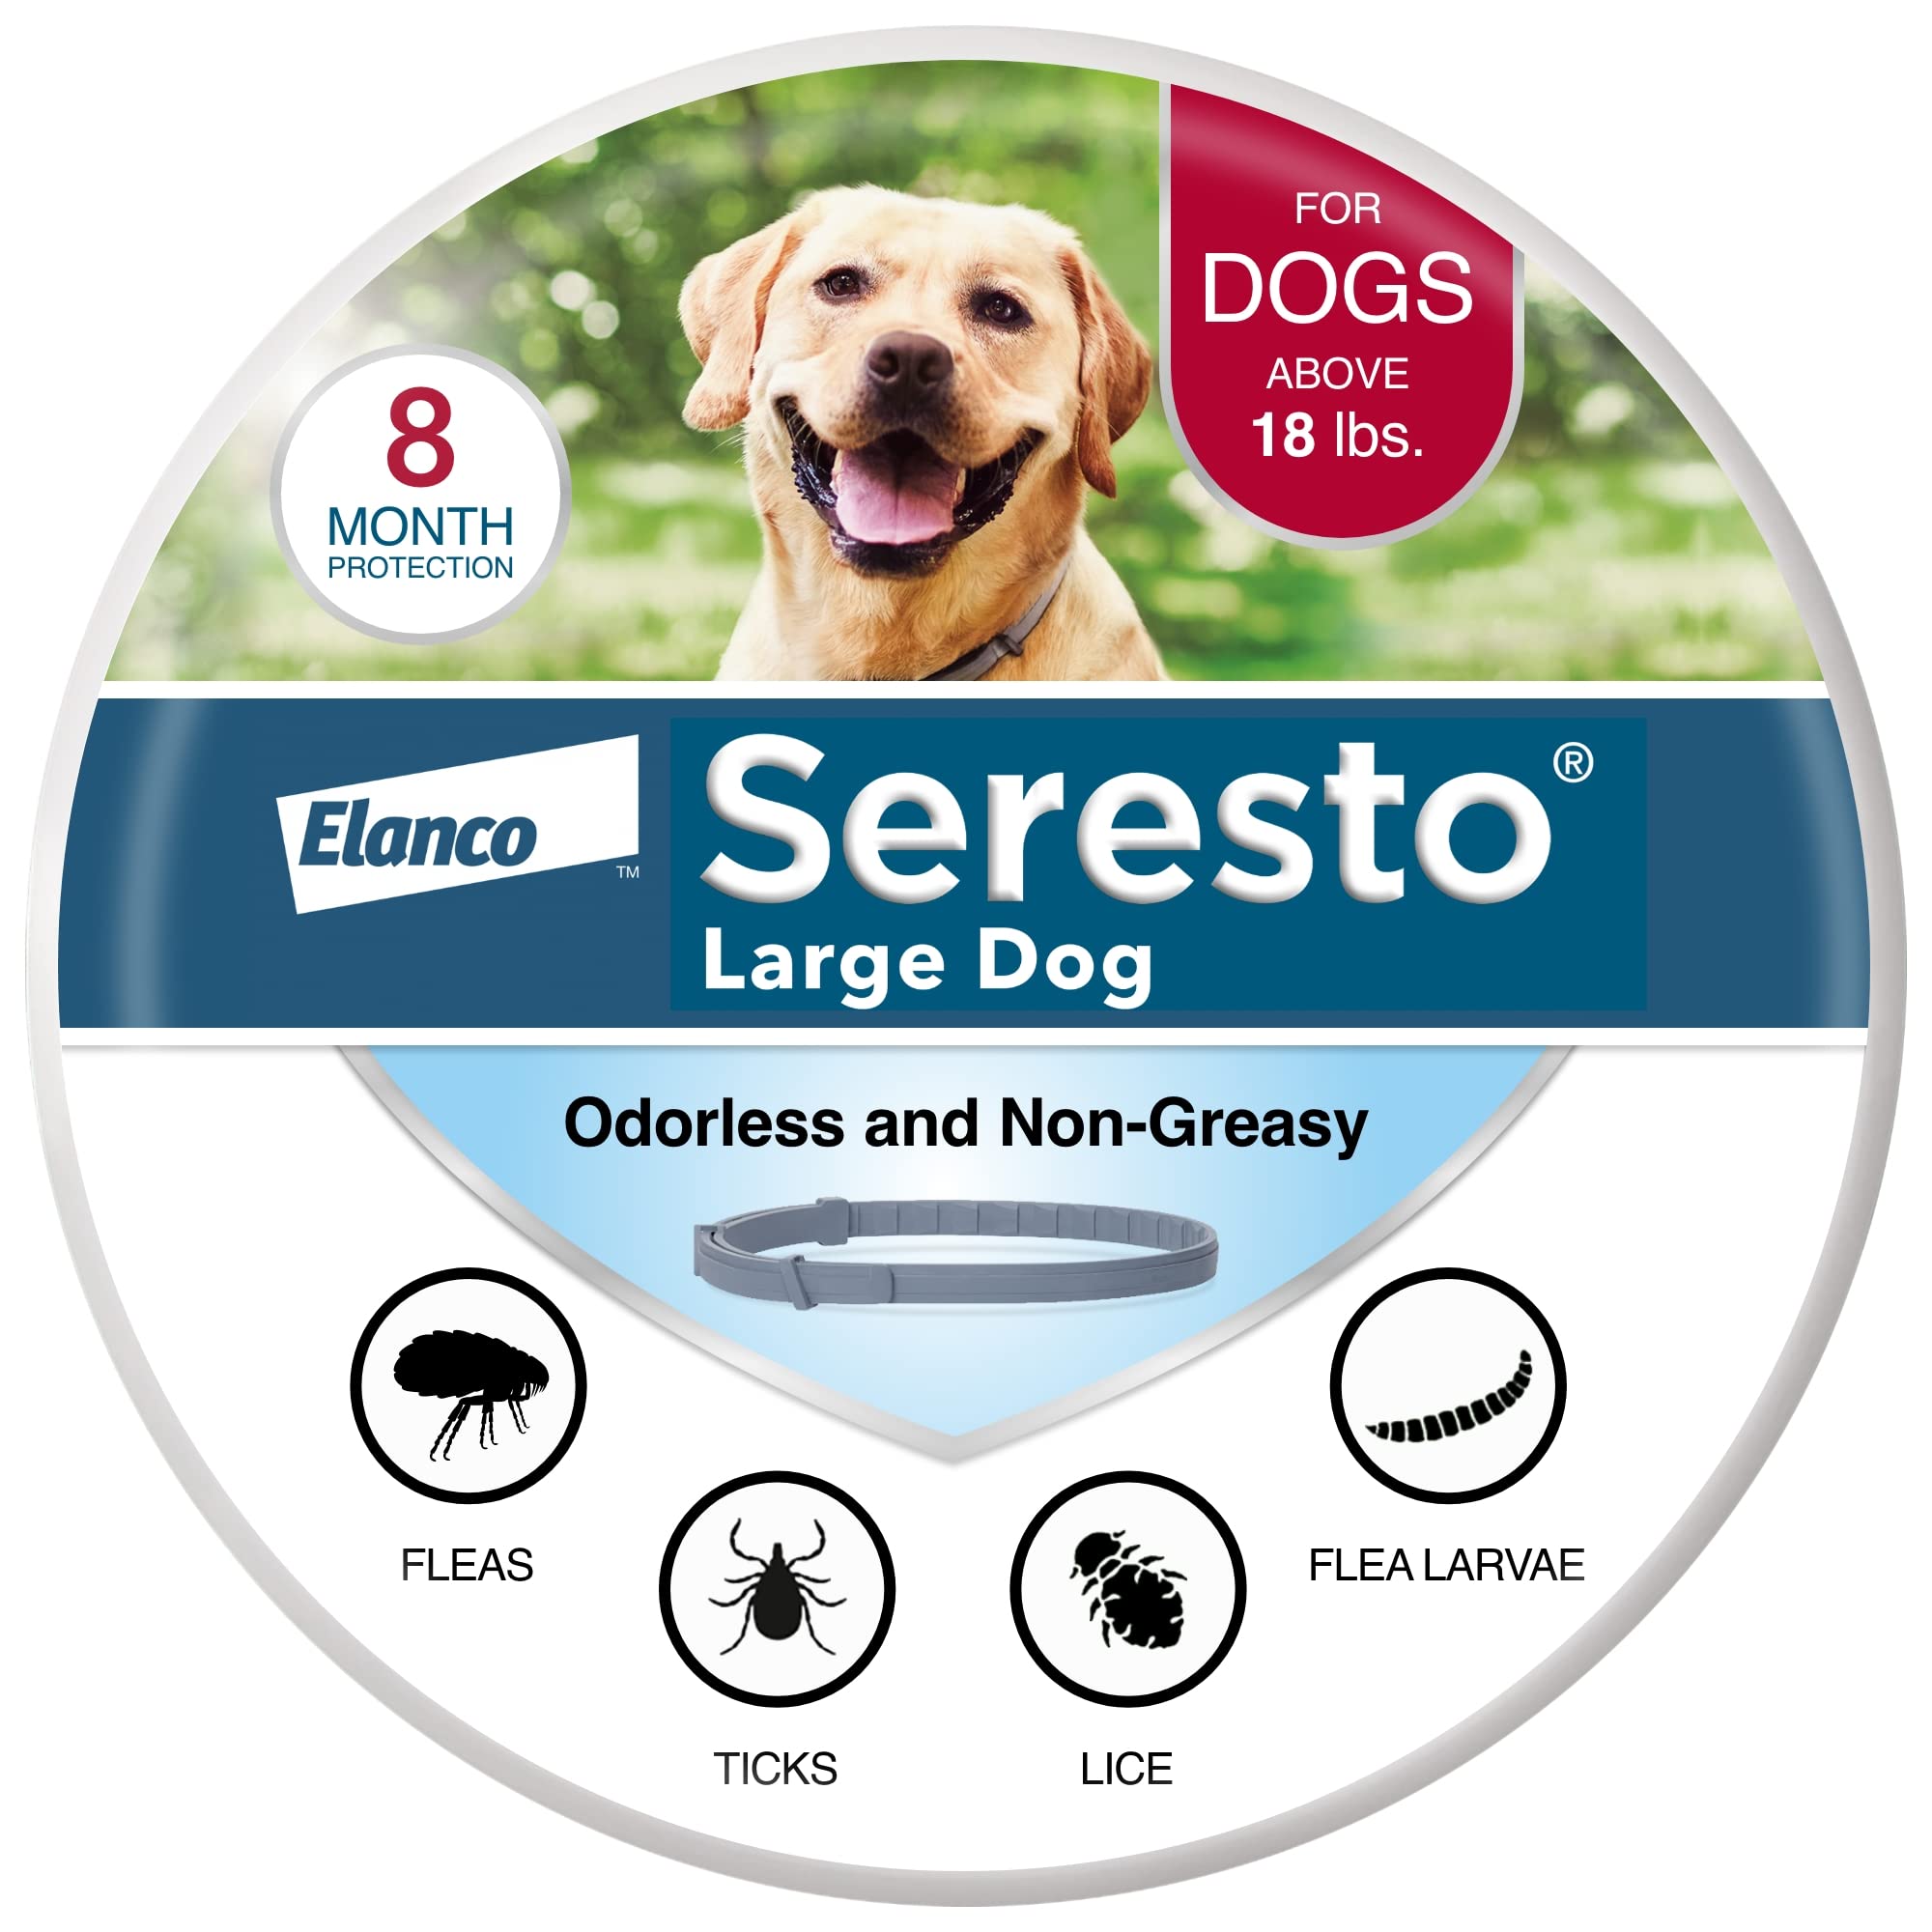  Seresto Рекомендованный ветеринаром ошейник для лечения и профилактики блох и клещей для больших собак для собак...